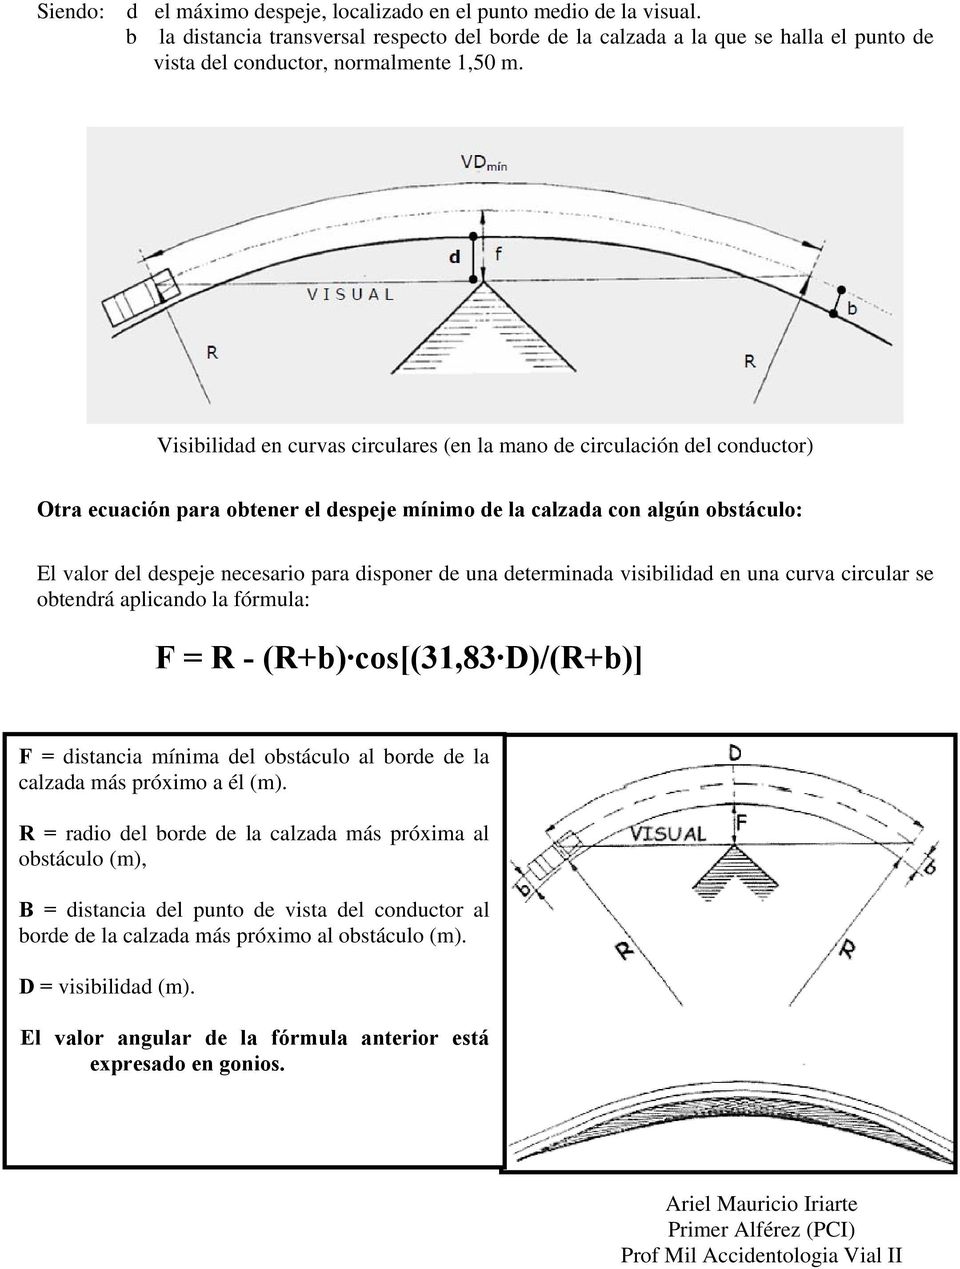 Visibilidad en curvas circulares (en la mano de circulación del conductor) Otra ecuación para obtener el despeje mínimo de la calzada con algún obstáculo: El valor del despeje necesario para disponer